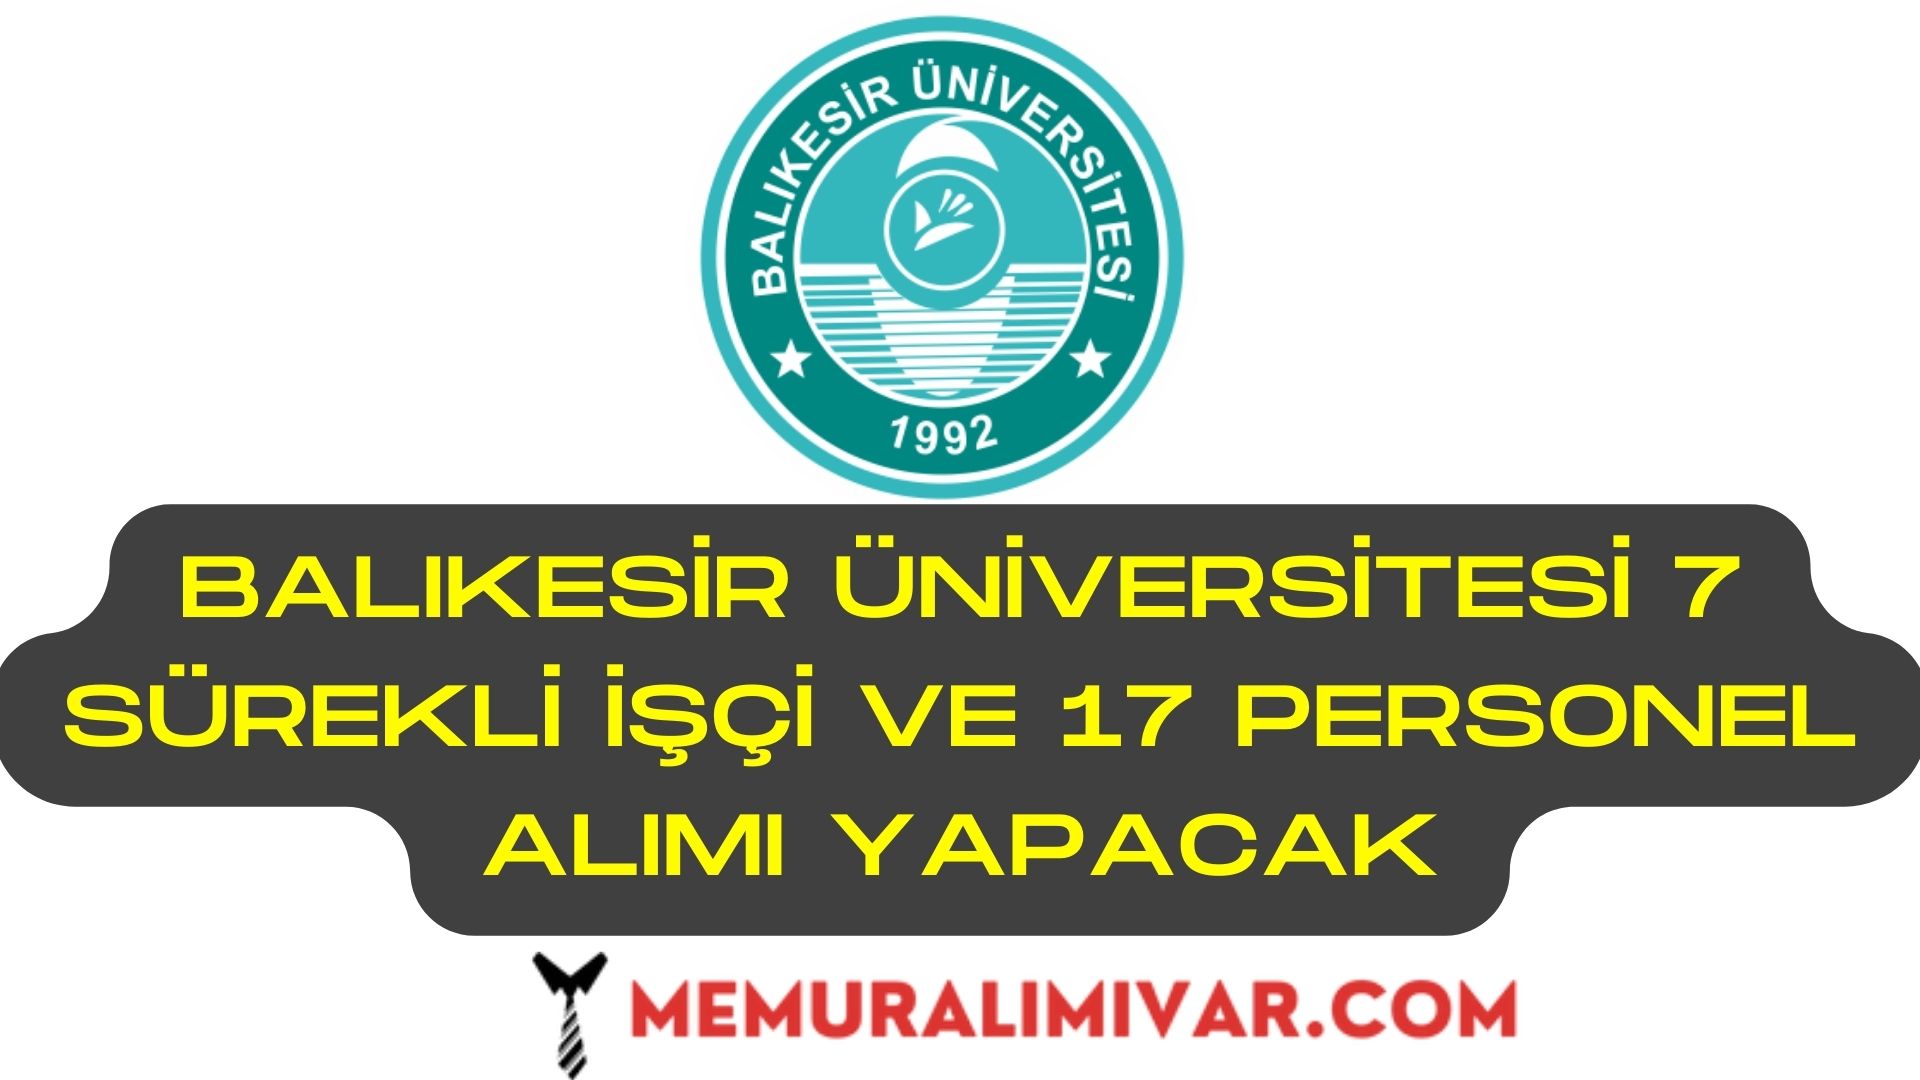 Balıkesir Üniversitesi 7 Sürekli İşçi ve 17 Personel Alımı İş Başvuru Formu 2022